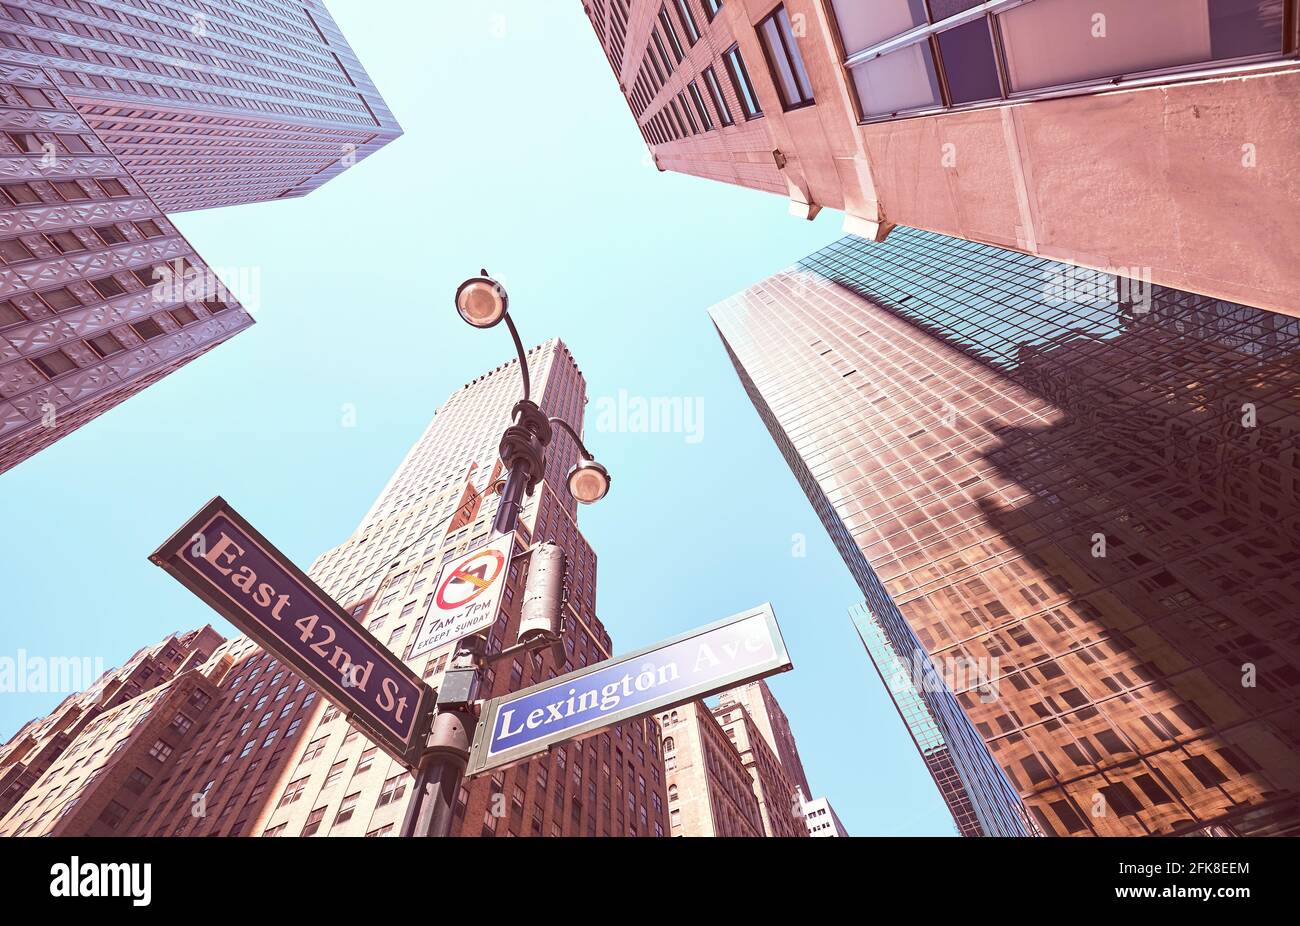 En regardant les panneaux Lexington Avenue et East 42nd Street à Manhattan, image colorée, New York City, Etats-Unis. Banque D'Images